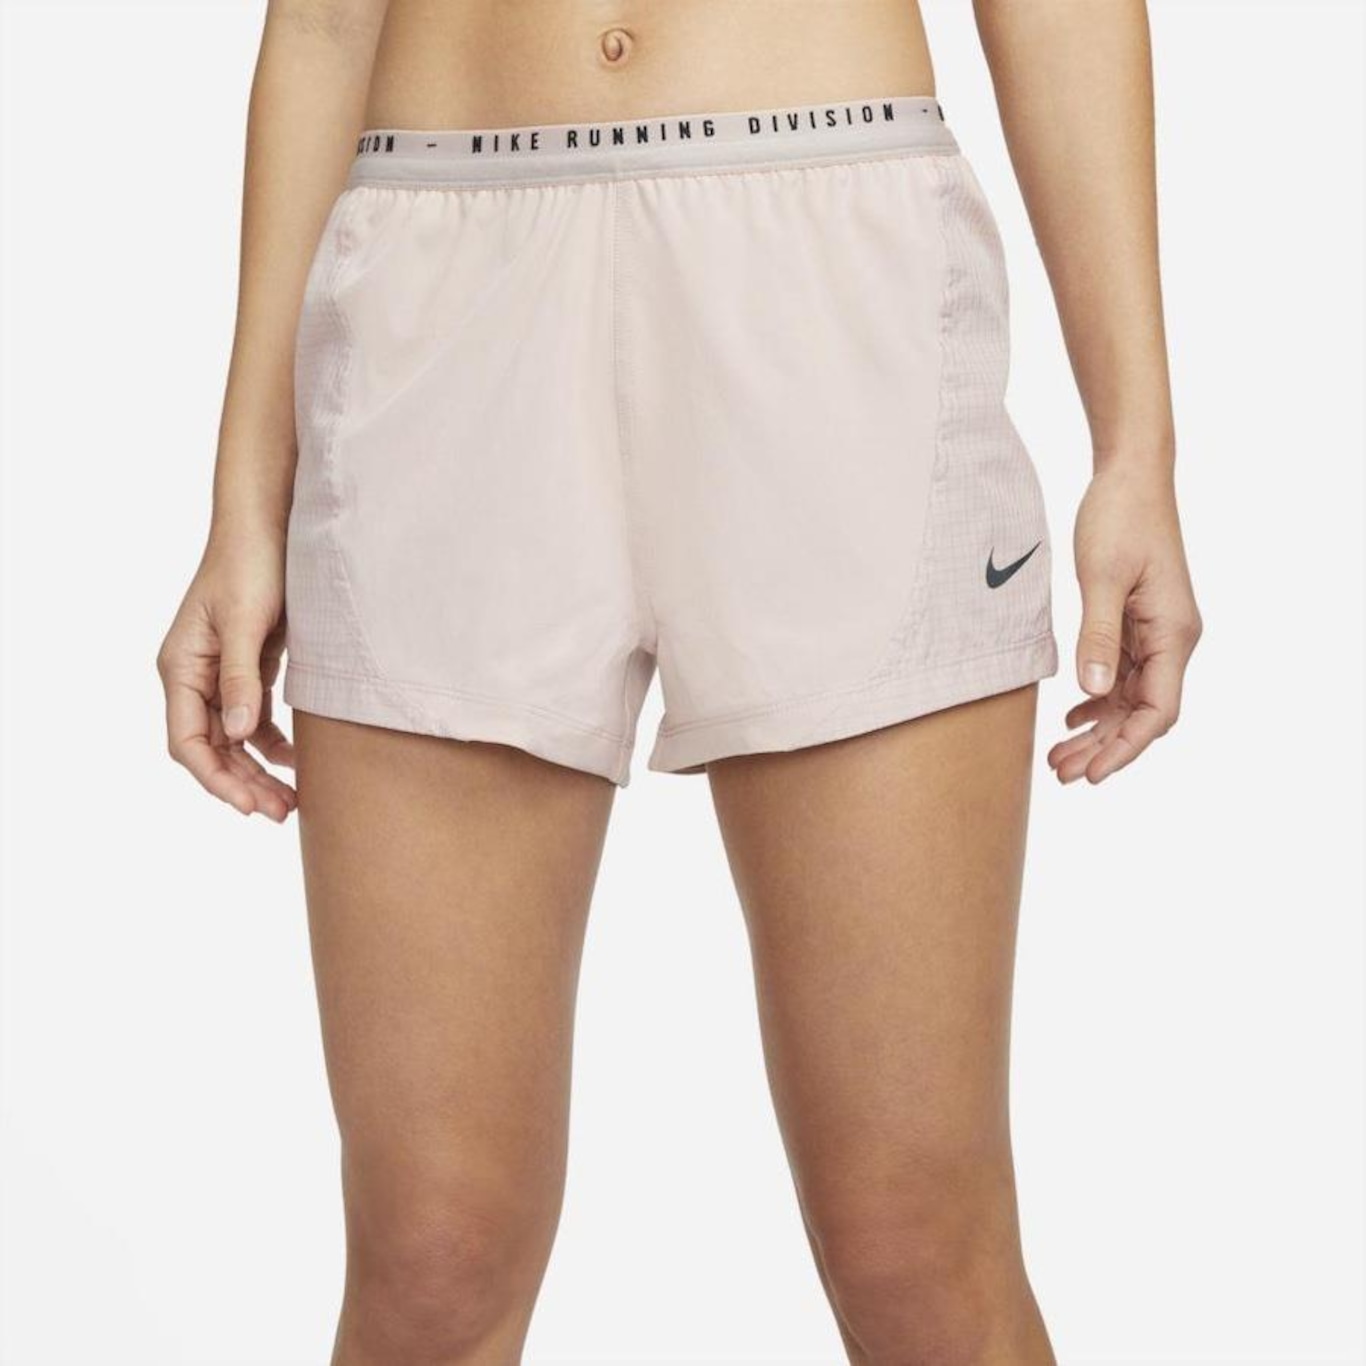 Shorts Nike Dri-FIT Run Division Tempo Luxe - Feminino